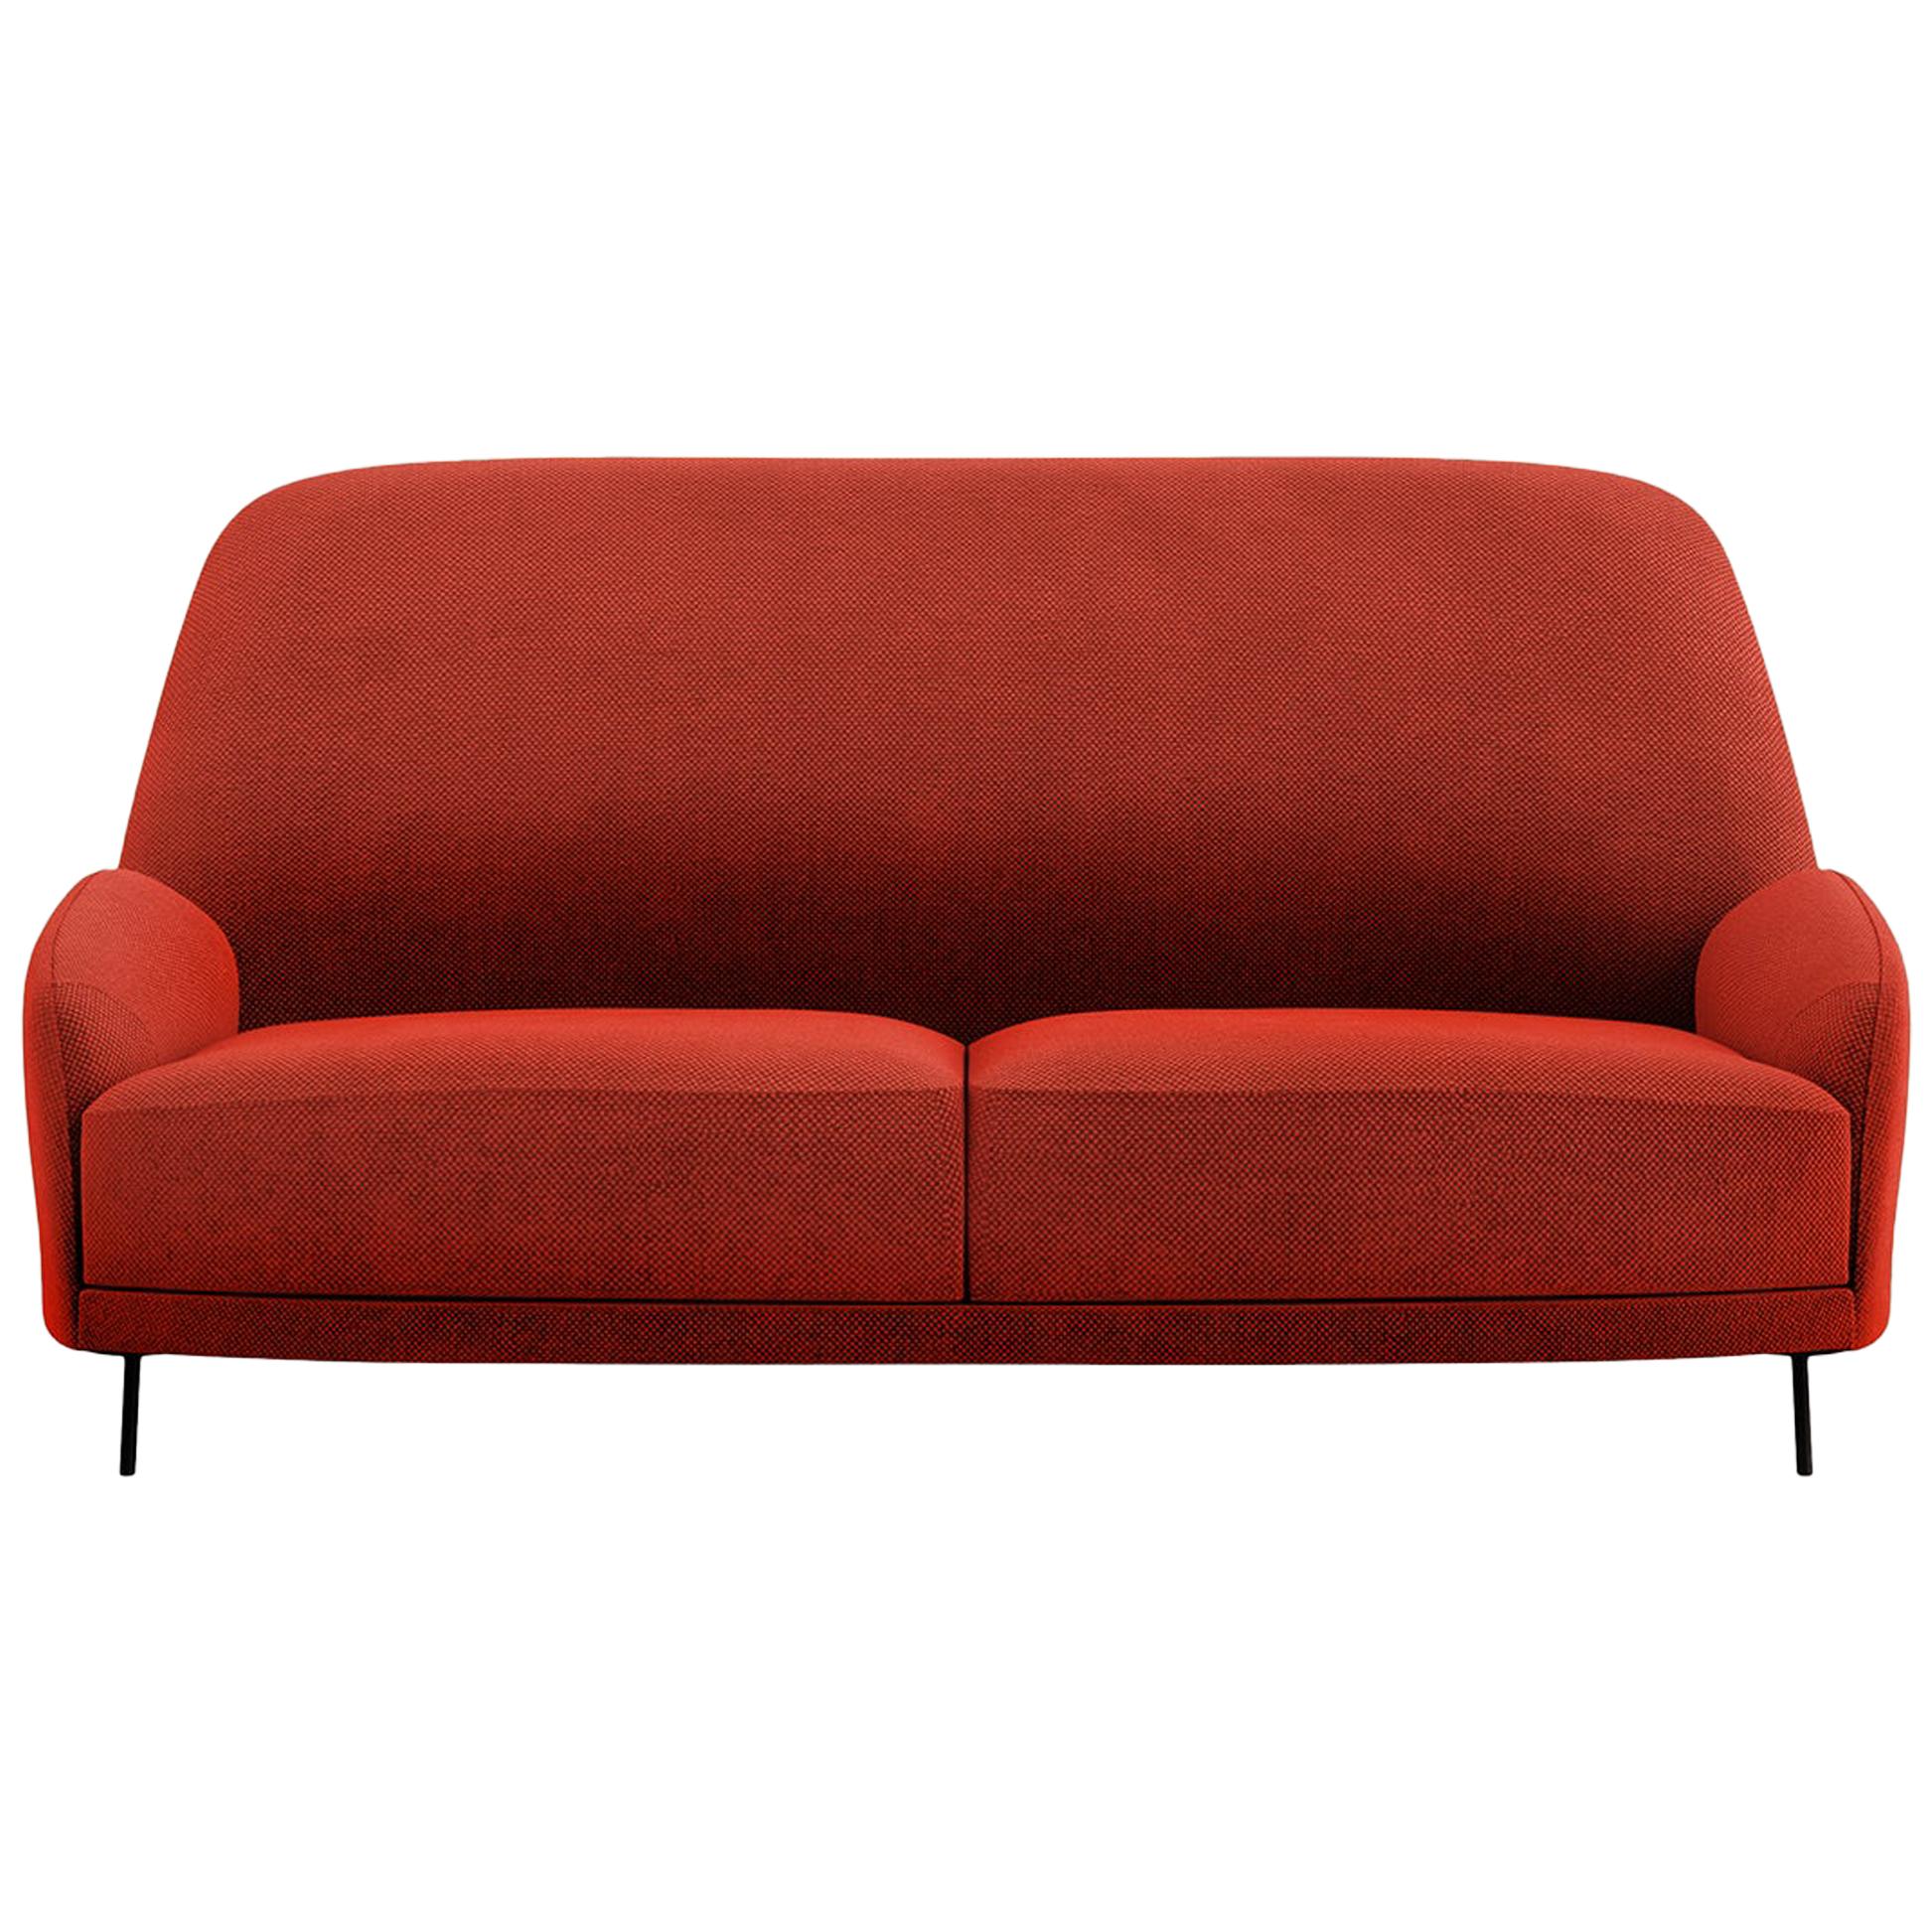 Tacchini Santiago Two-Seater Sofa in Red Fabric by Claesson Koivisto Rune